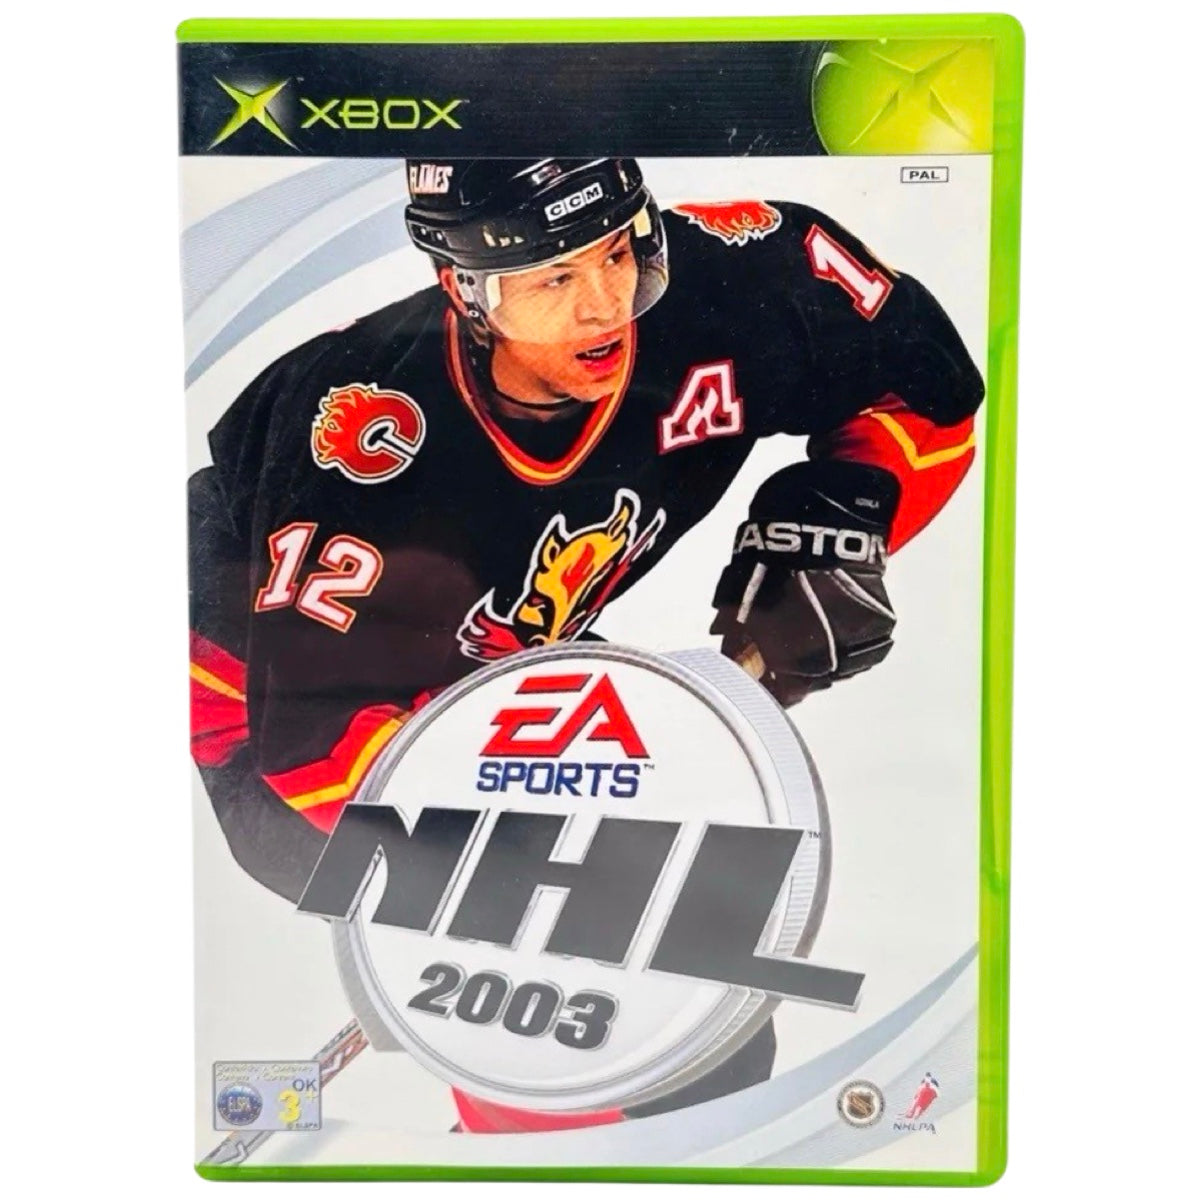 Xbox: NHL 2003